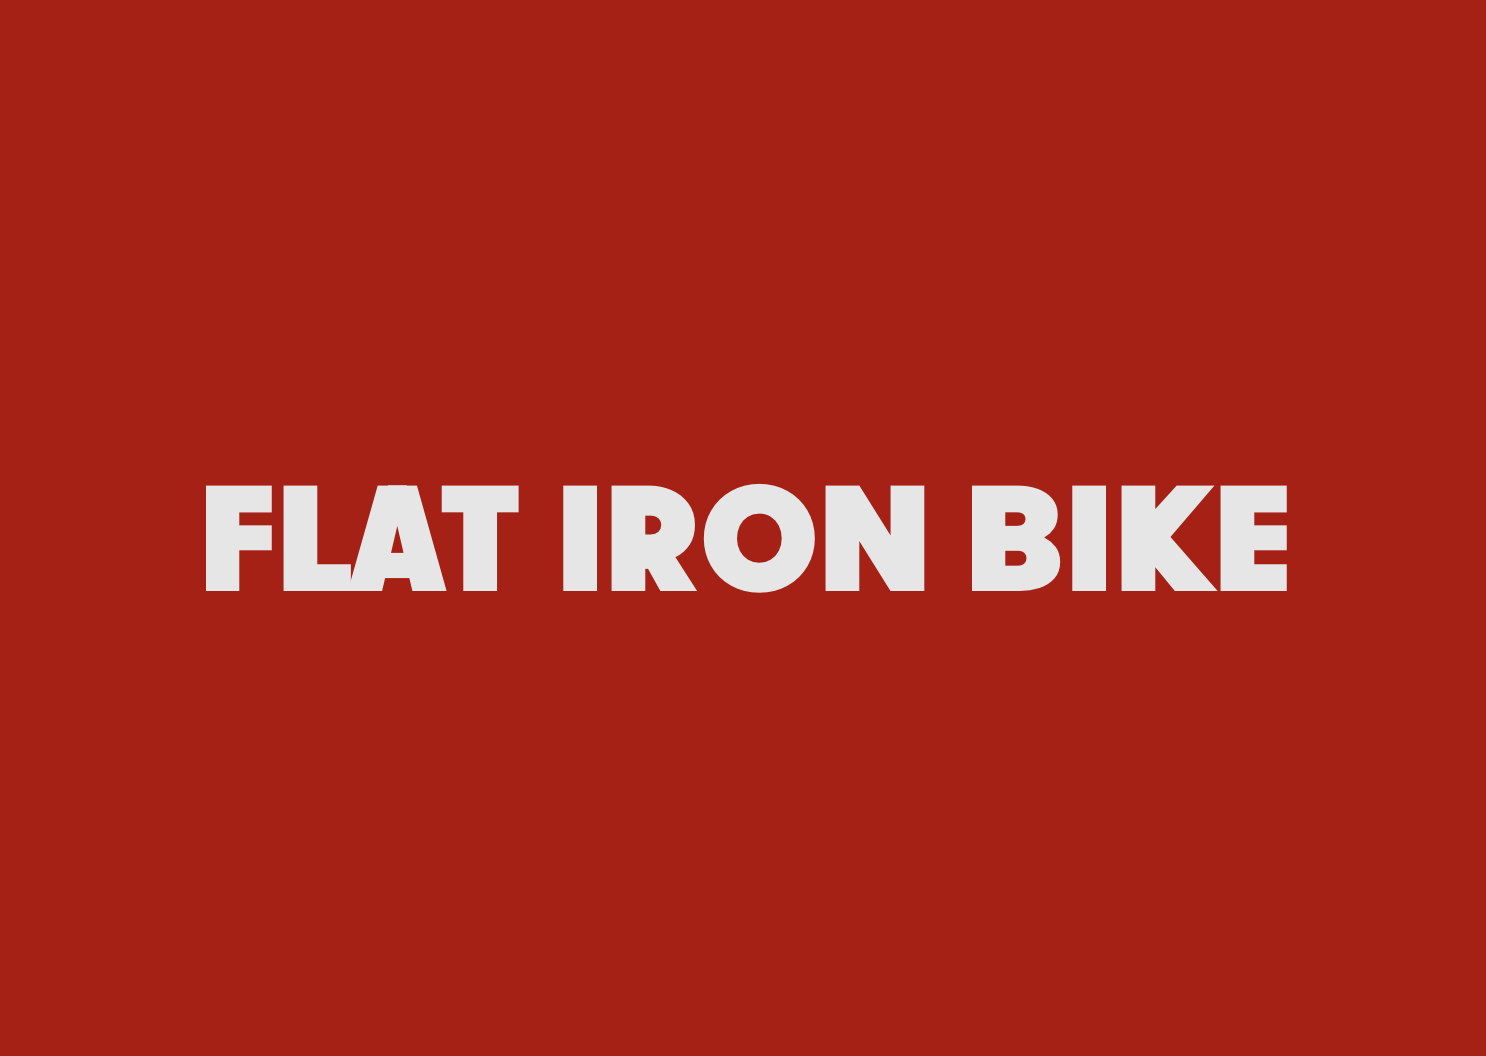 Flat Iron Bike